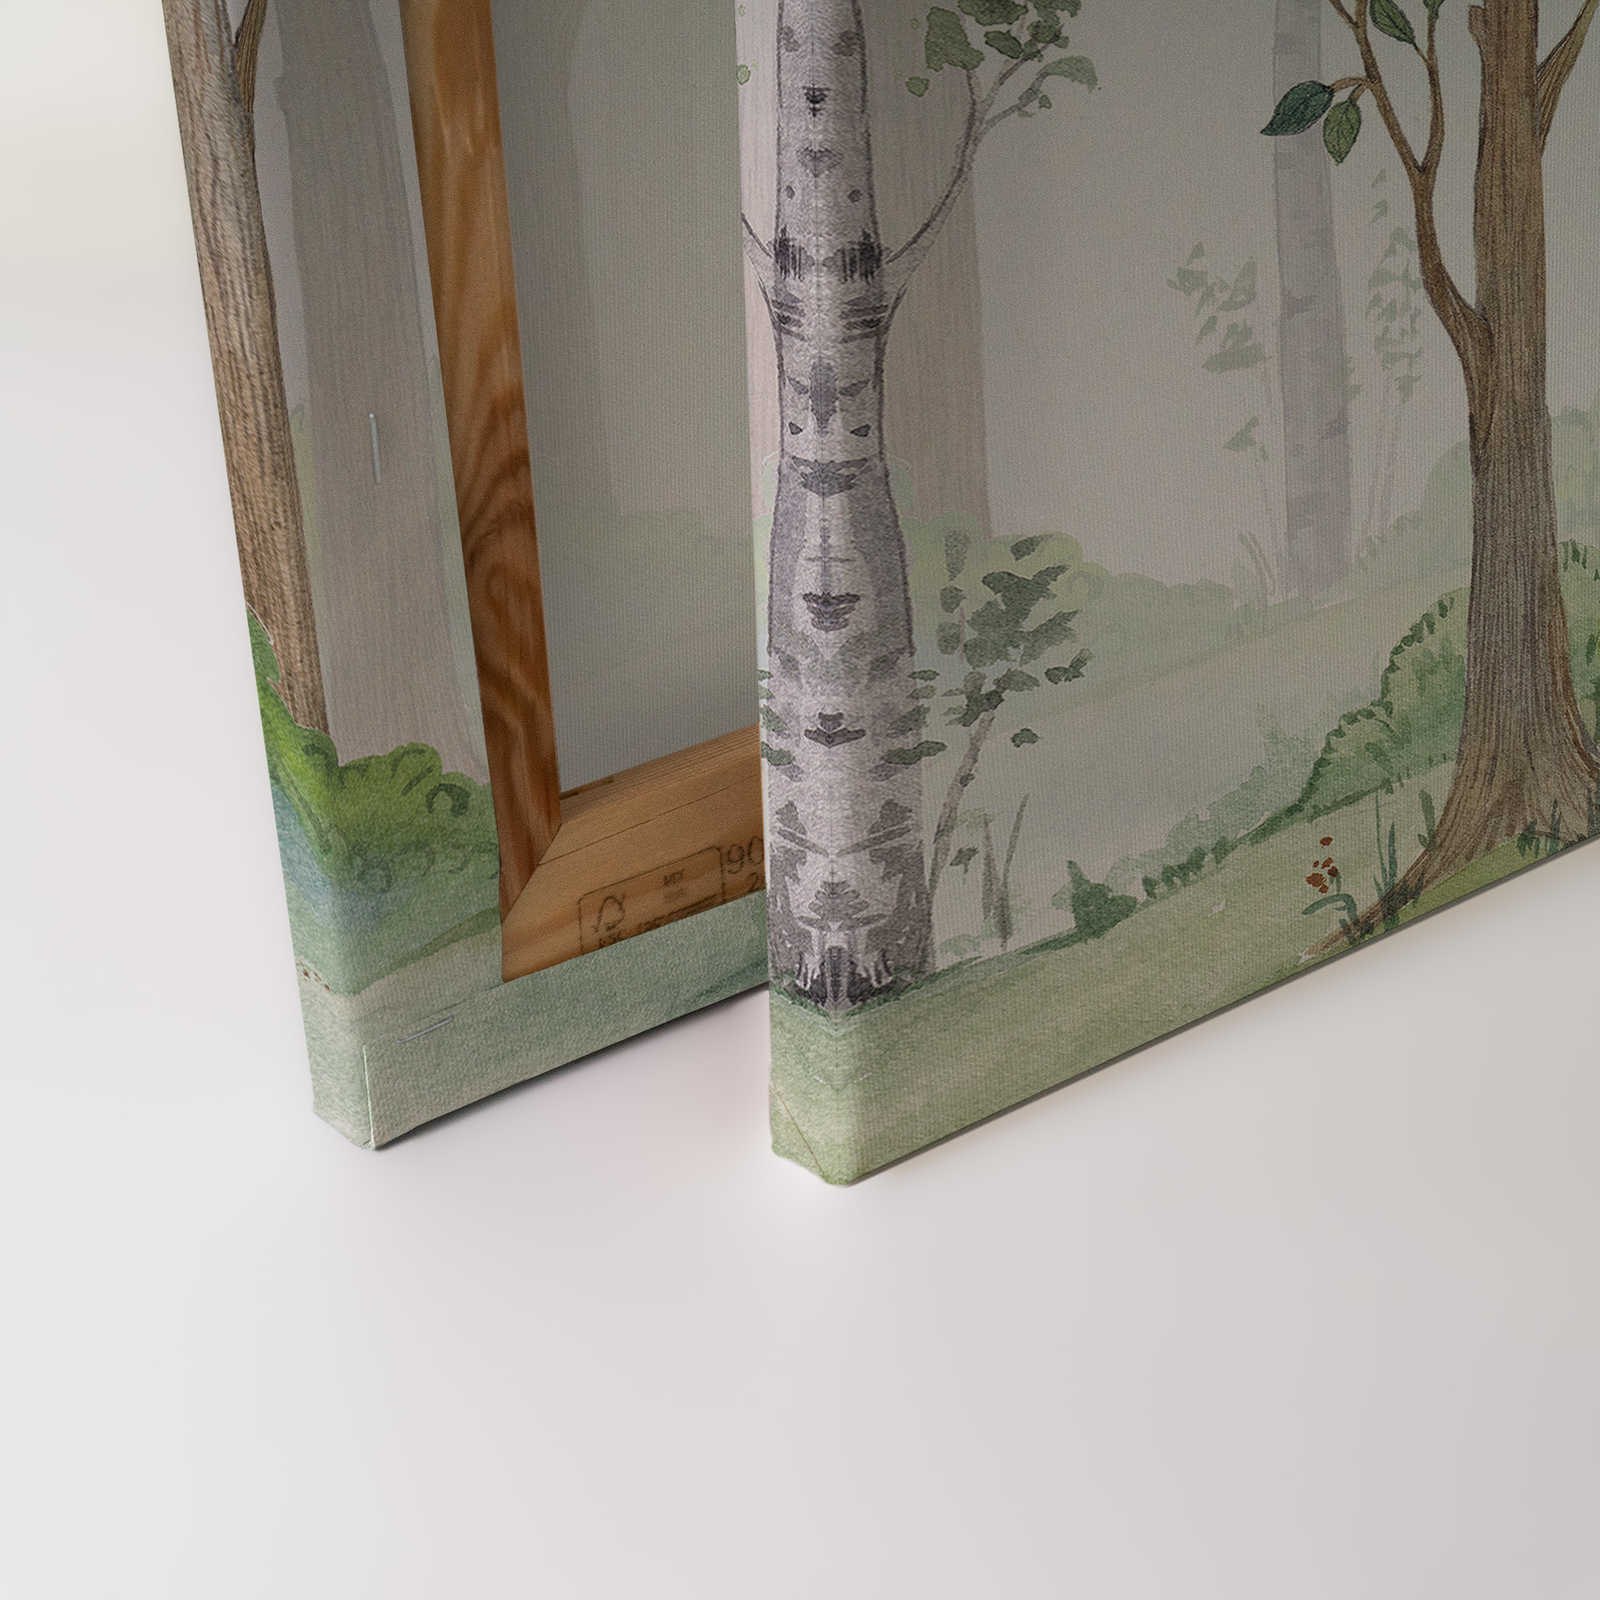             Leinwandbild mit gemaltem Wald für Kinderzimmer – 0,90 m x 0,60 m
        